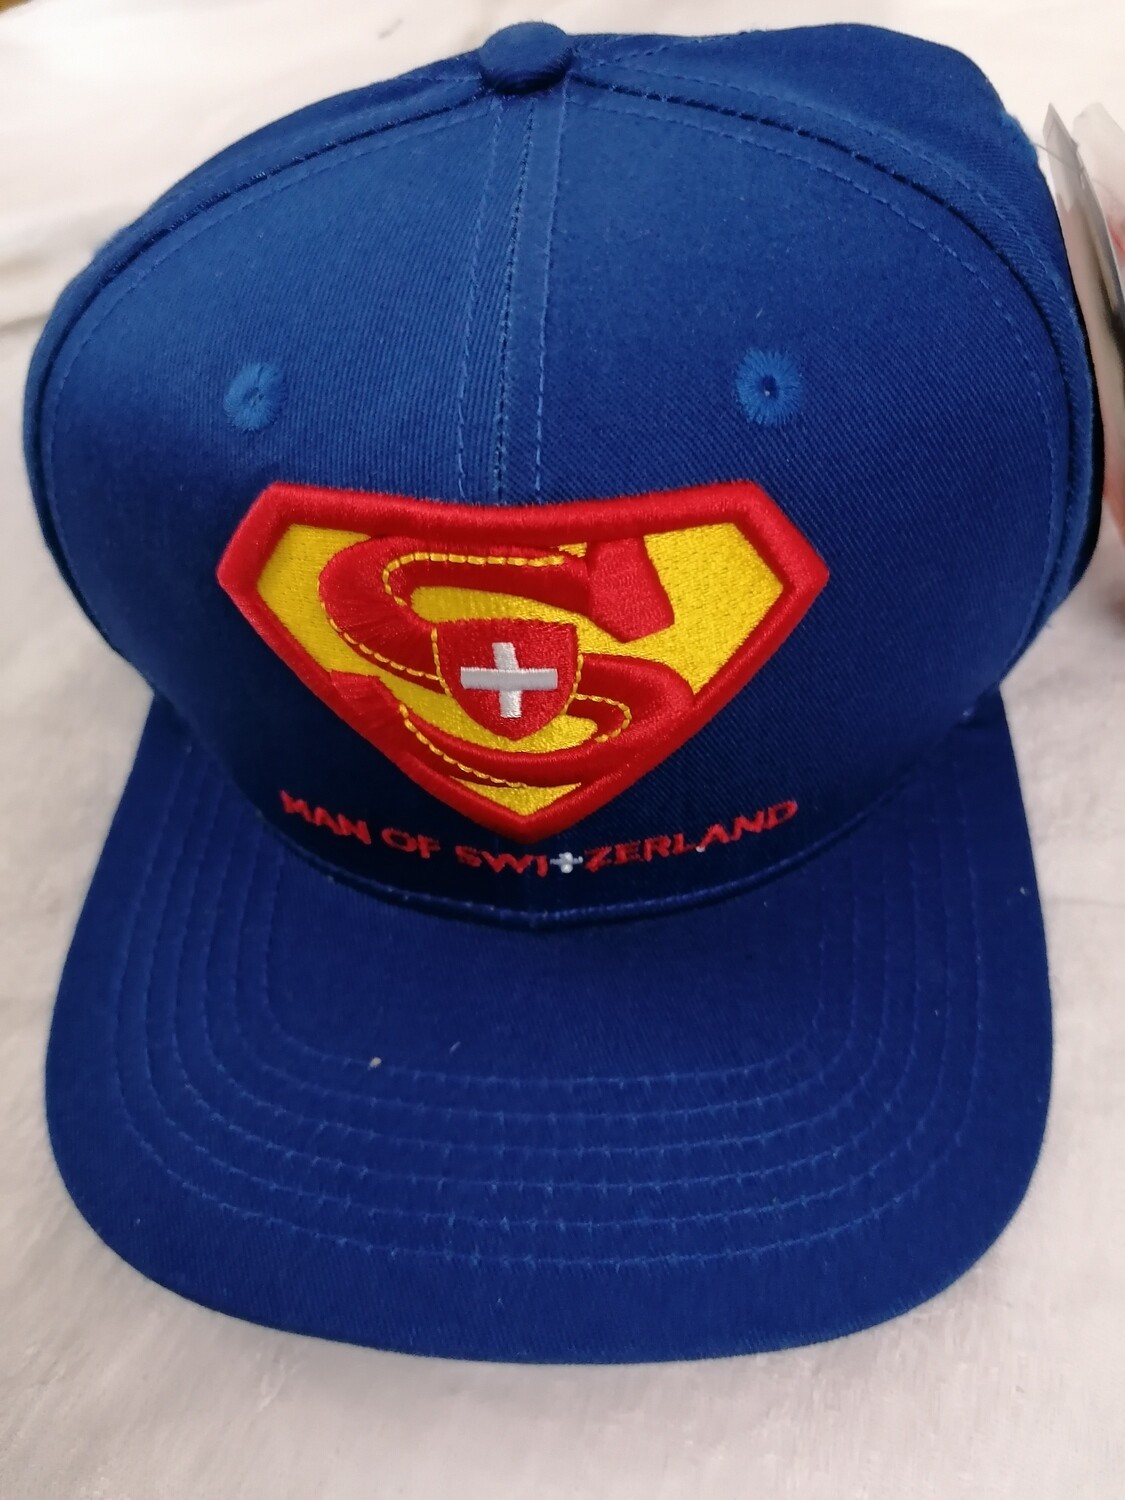 Casquette bleue avec logo Superman Man of Switzerland Suisse